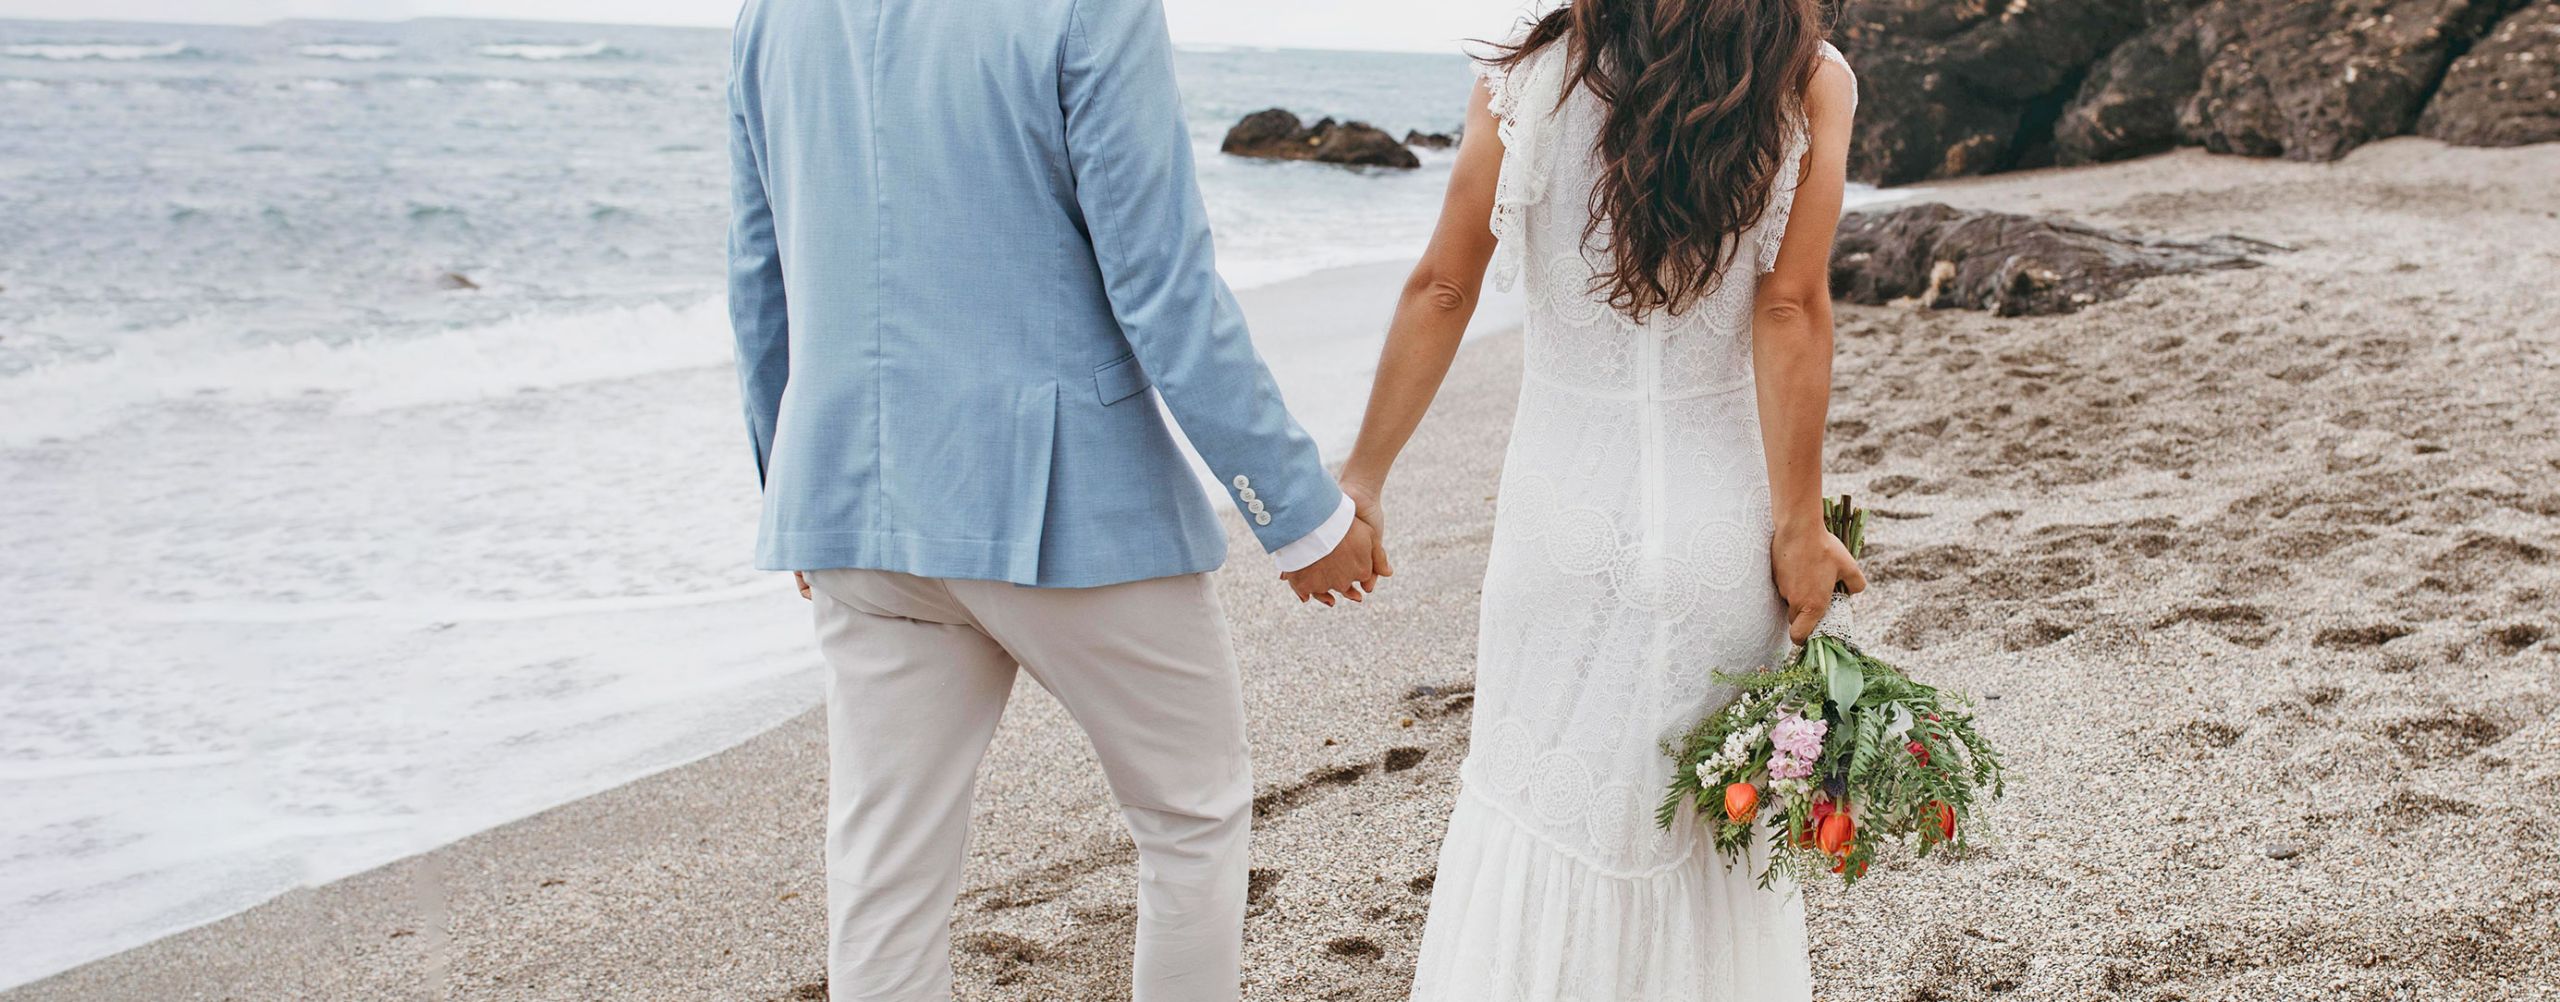 A couple during a wedding photo shoot in a beach in Ibiza